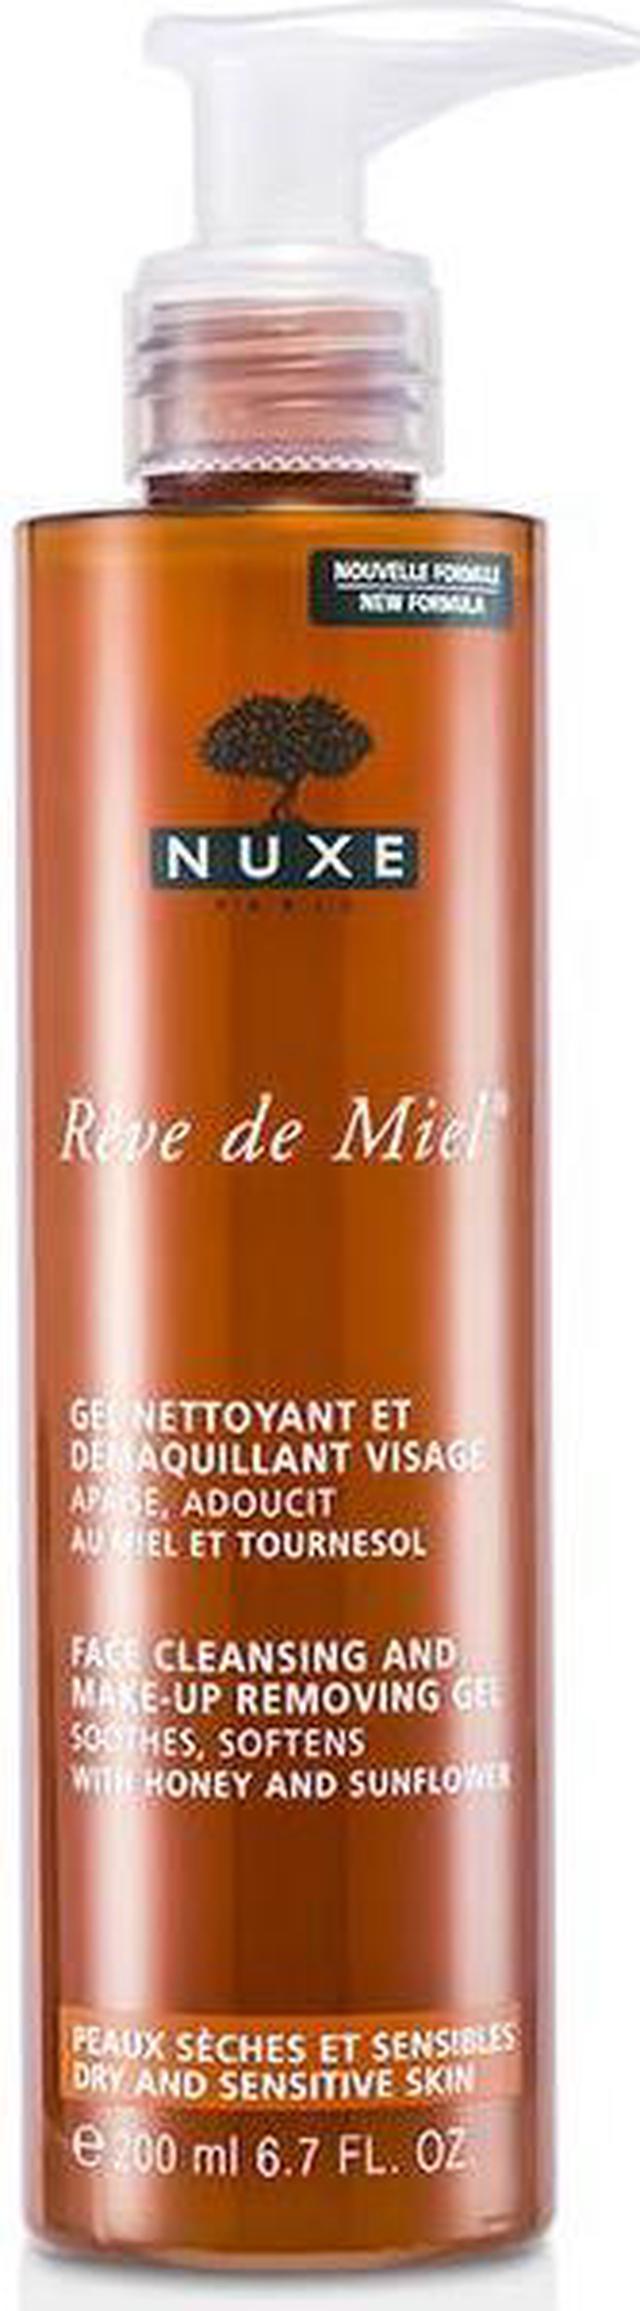 Nuxe Makeup De Cleansing Face Removing Reve - Miel 200ml/6.7oz &